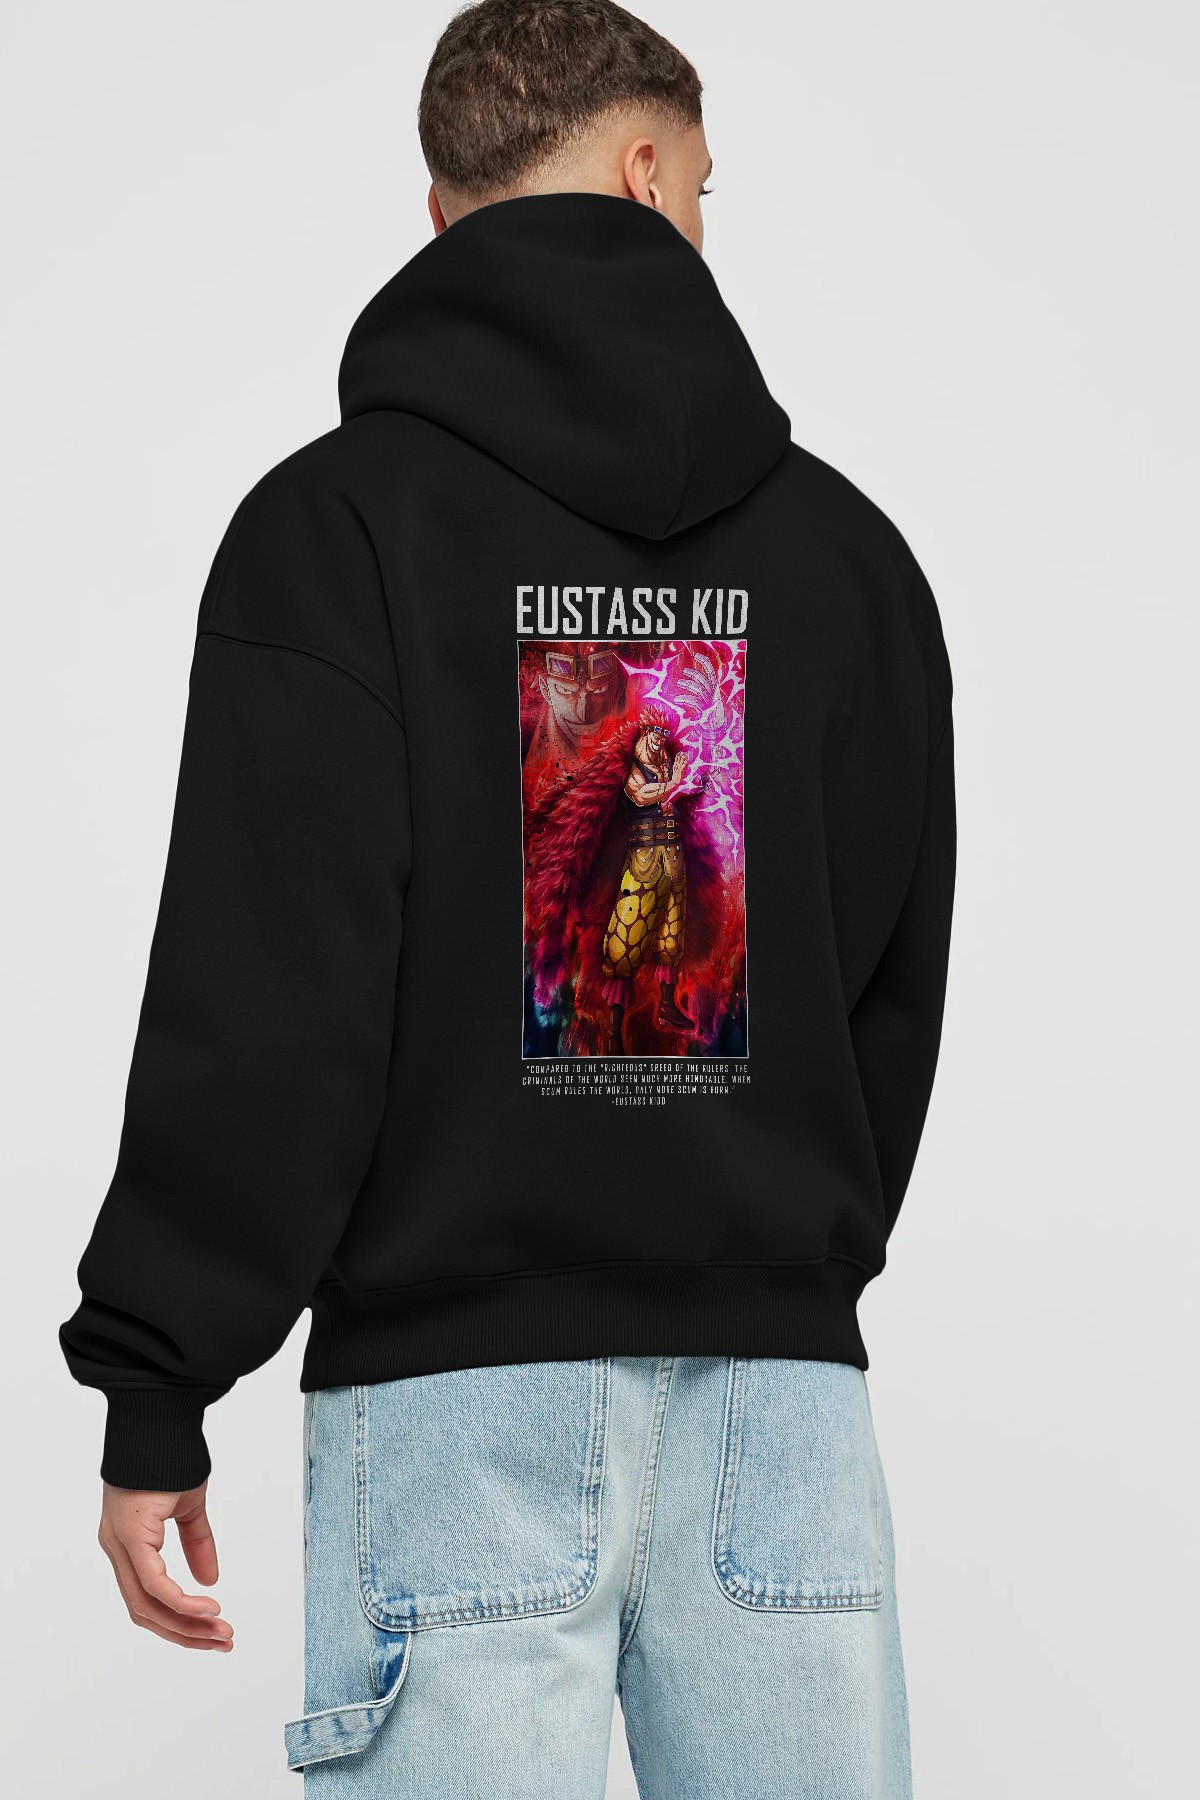 Eustass Kid Anime Arka Baskılı Hoodie Oversize Kapüşonlu Sweatshirt Erkek Kadın Unisex